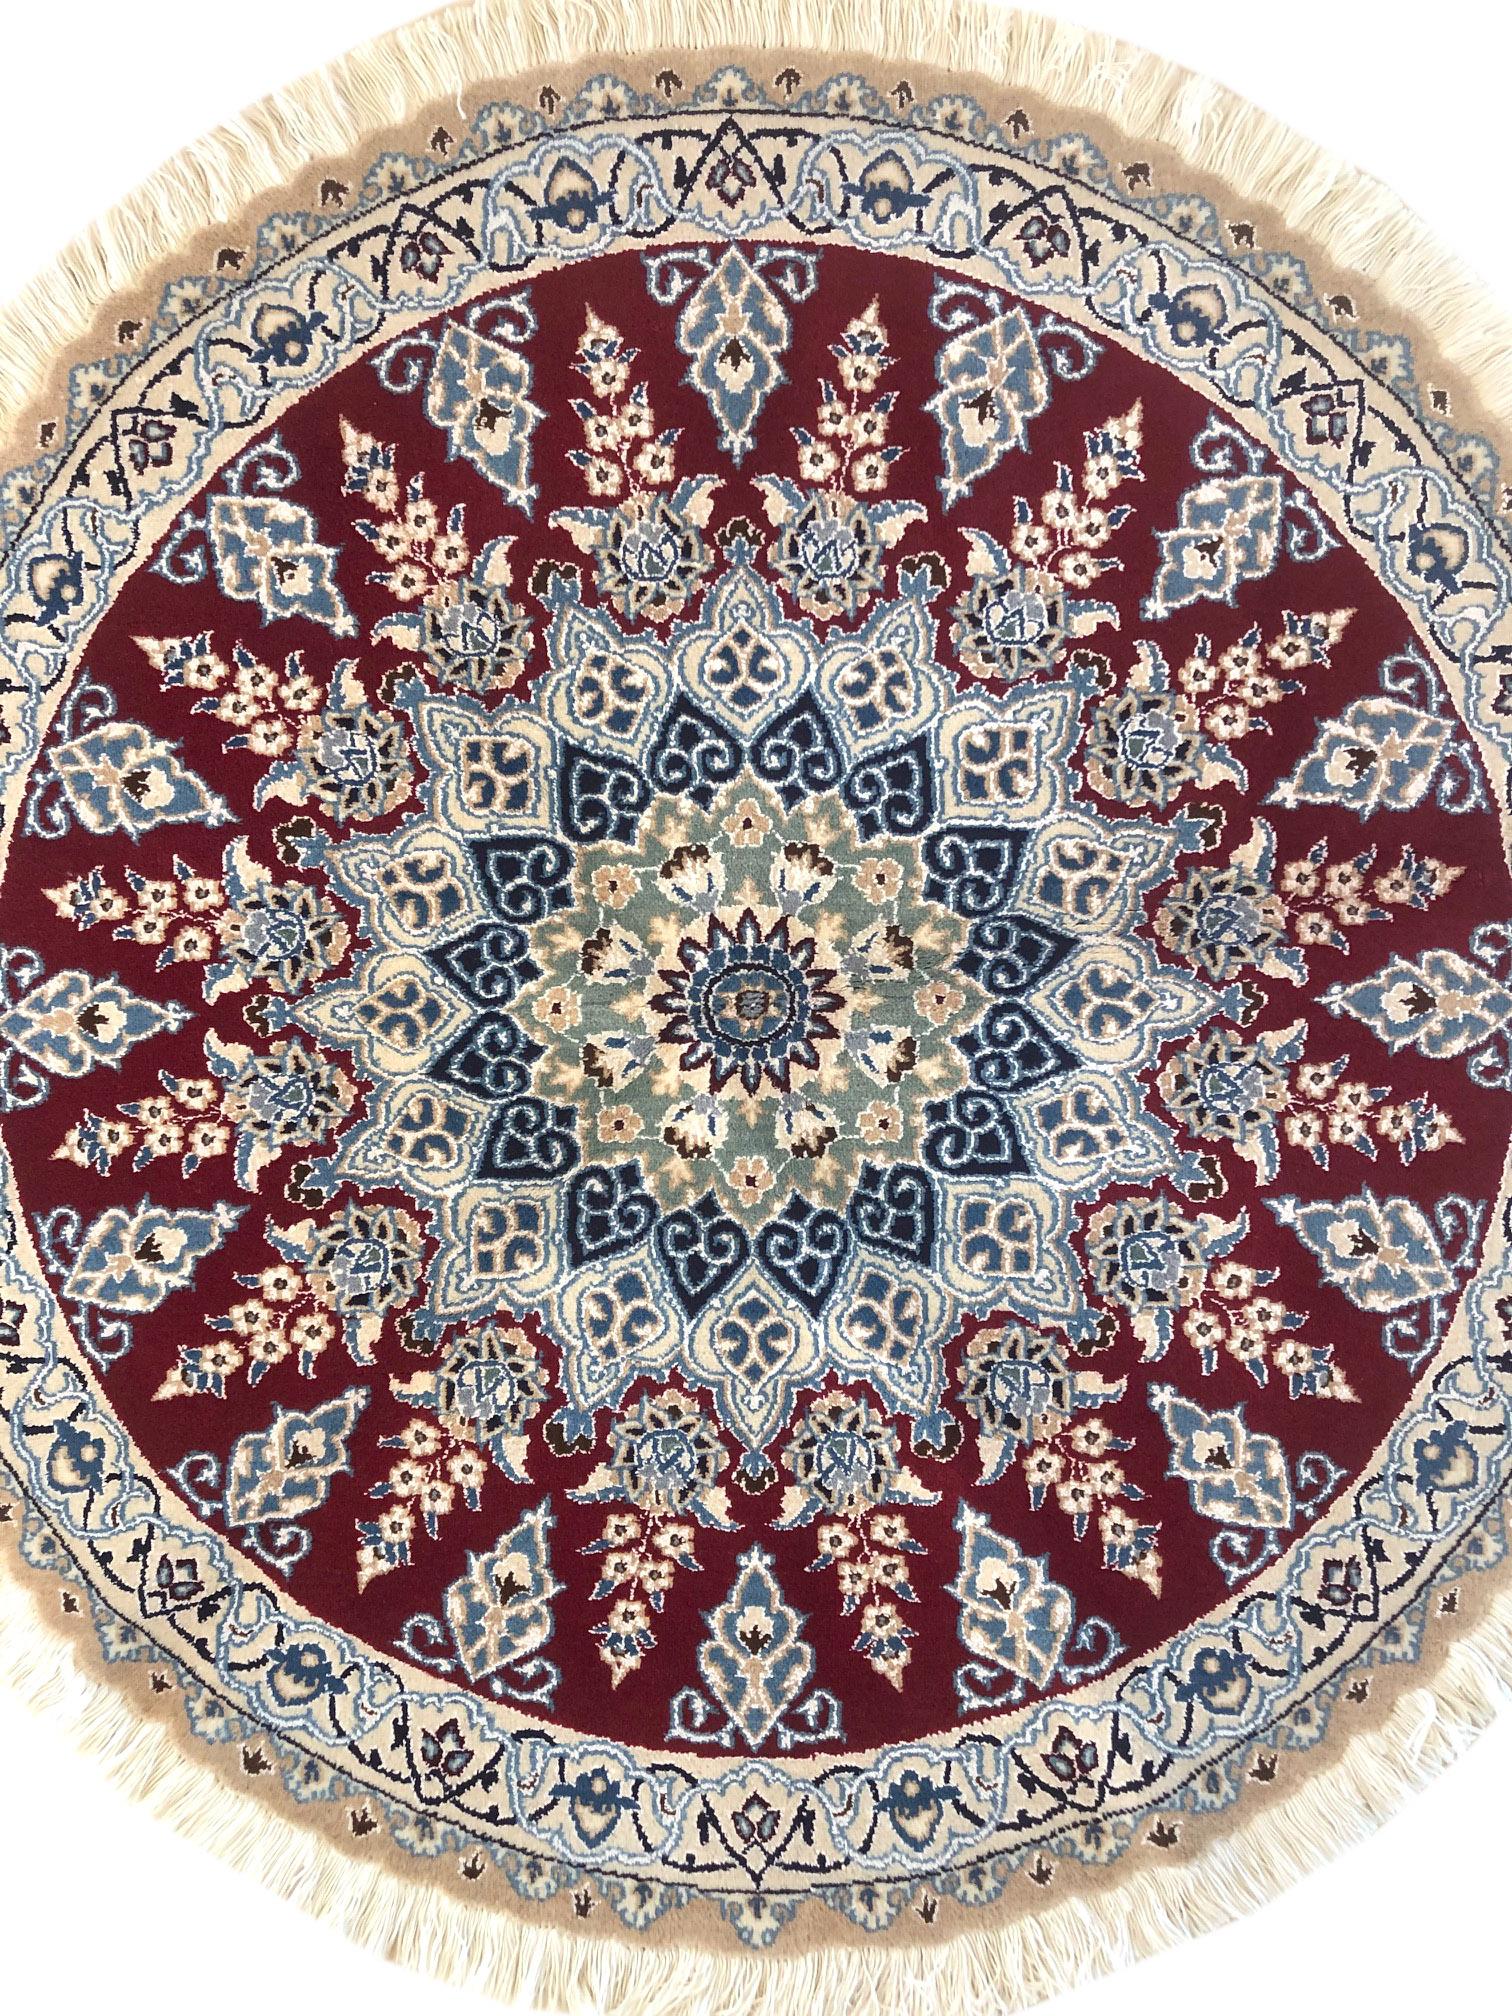 Dieser authentische runde, handgefertigte persische Nain (9 LA) Teppich hat einen Flor aus Wolle und Seide mit Baumwollgrund. Nain ist eine Stadt im Iran, die für die Herstellung feiner handgefertigter Teppiche bekannt ist. Dieser Teppich hat ein